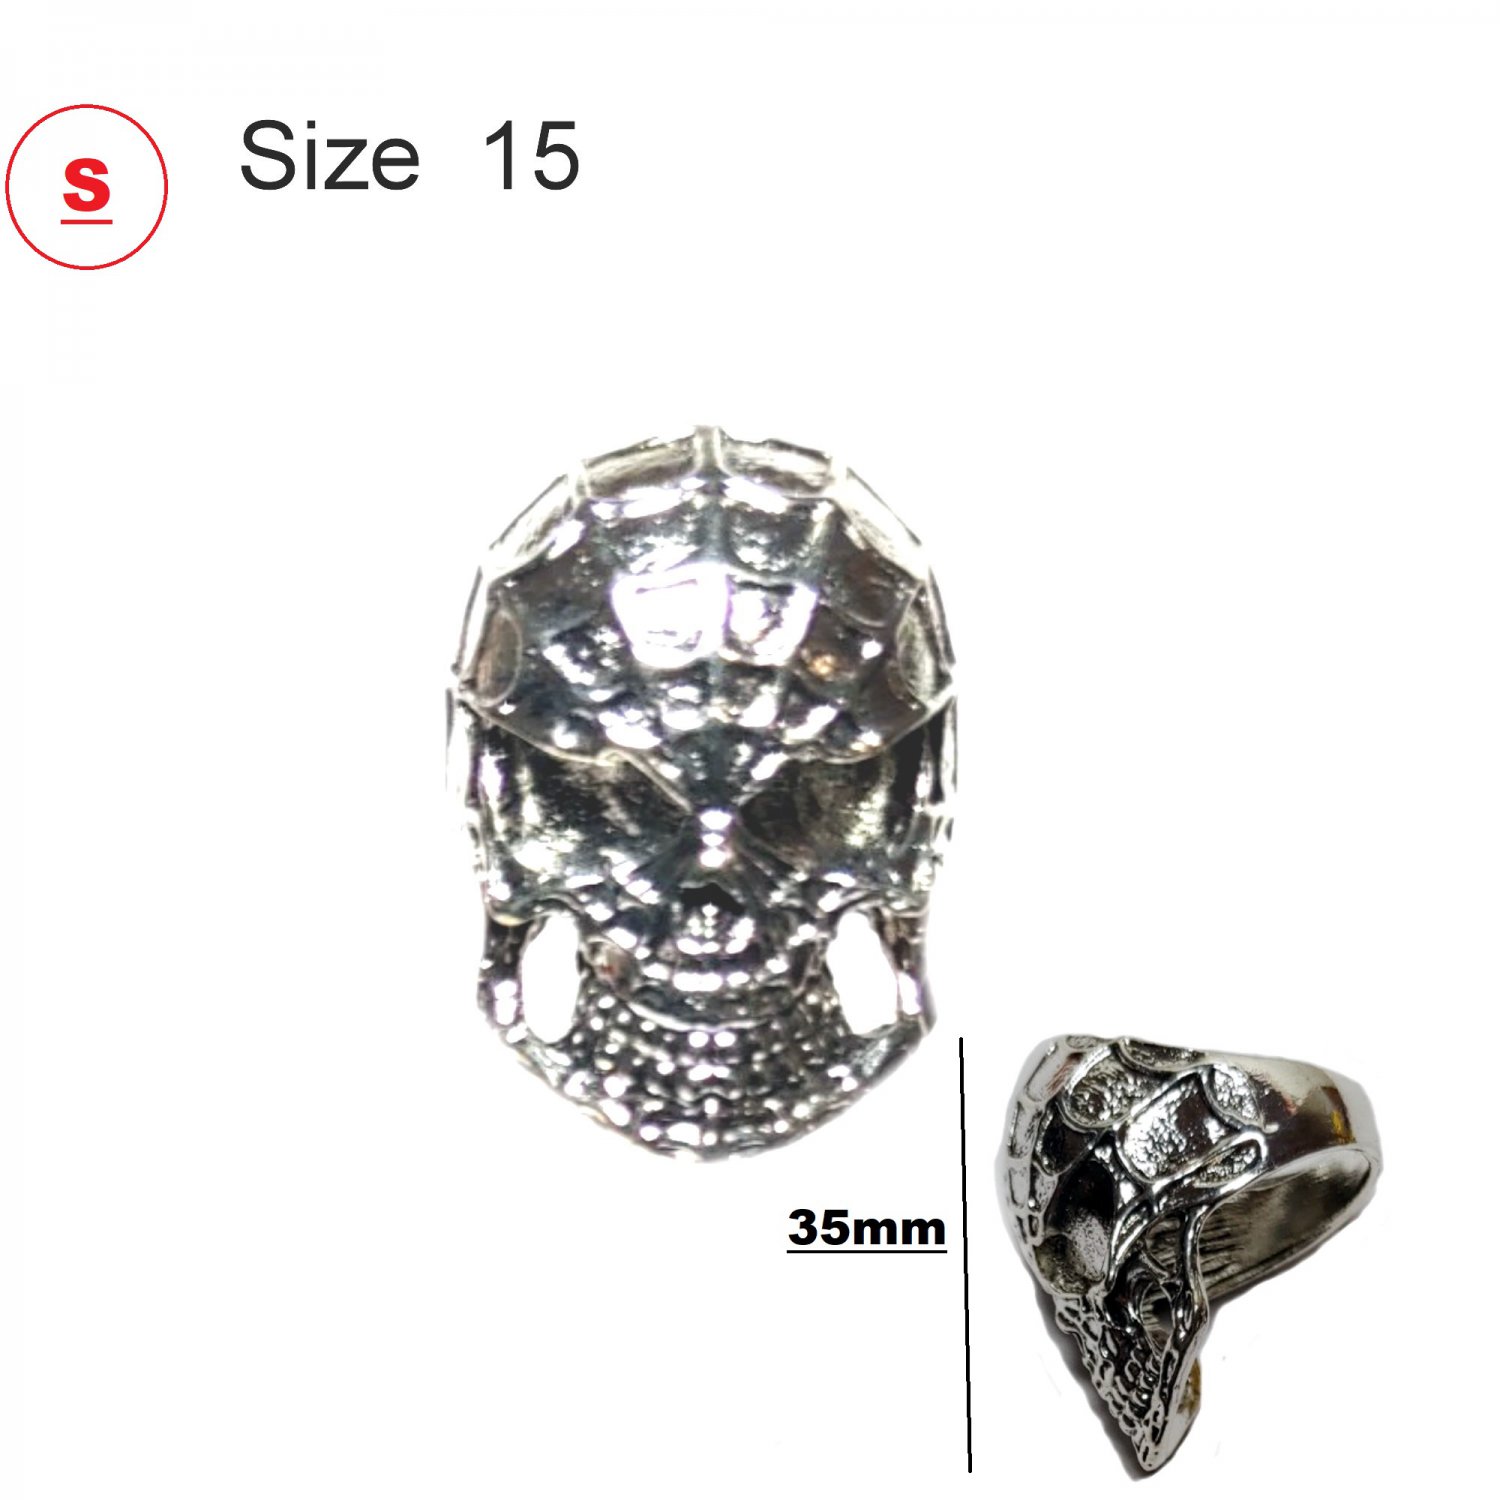 Skull Ring Stainless Steel Size 15